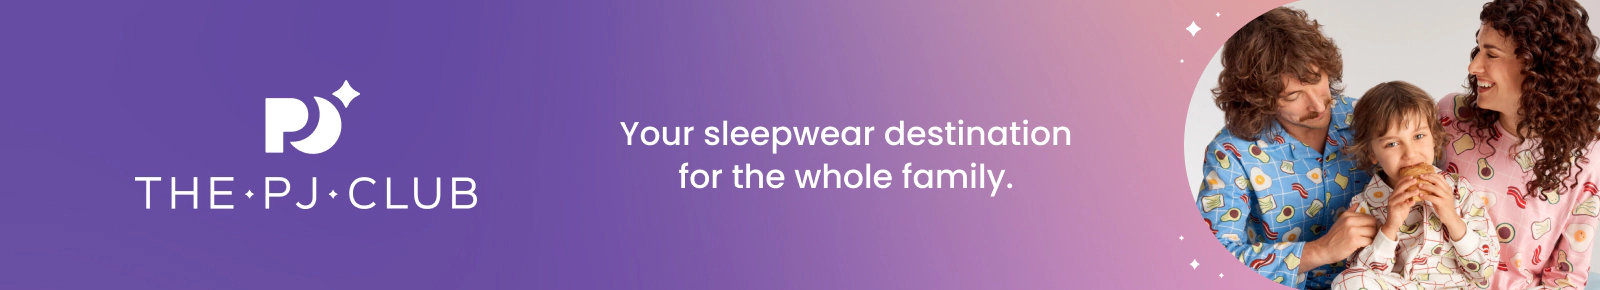 Sleepwear Gifts